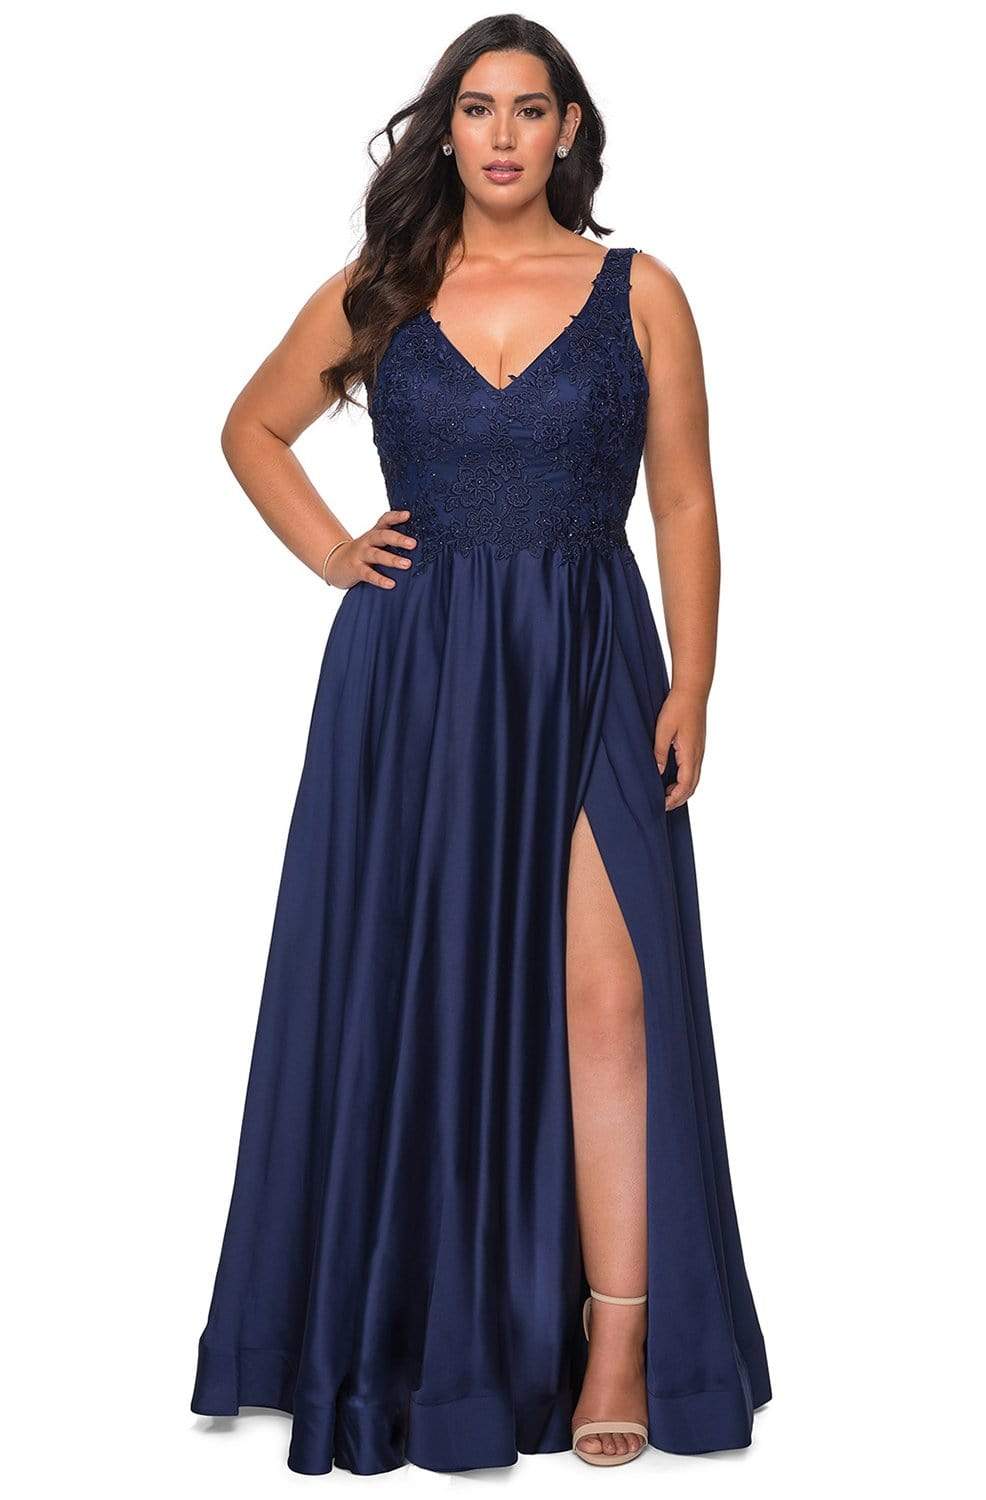 La Femme - 29039 Lace Bodice High Slit Satin Gown Evening Dresses